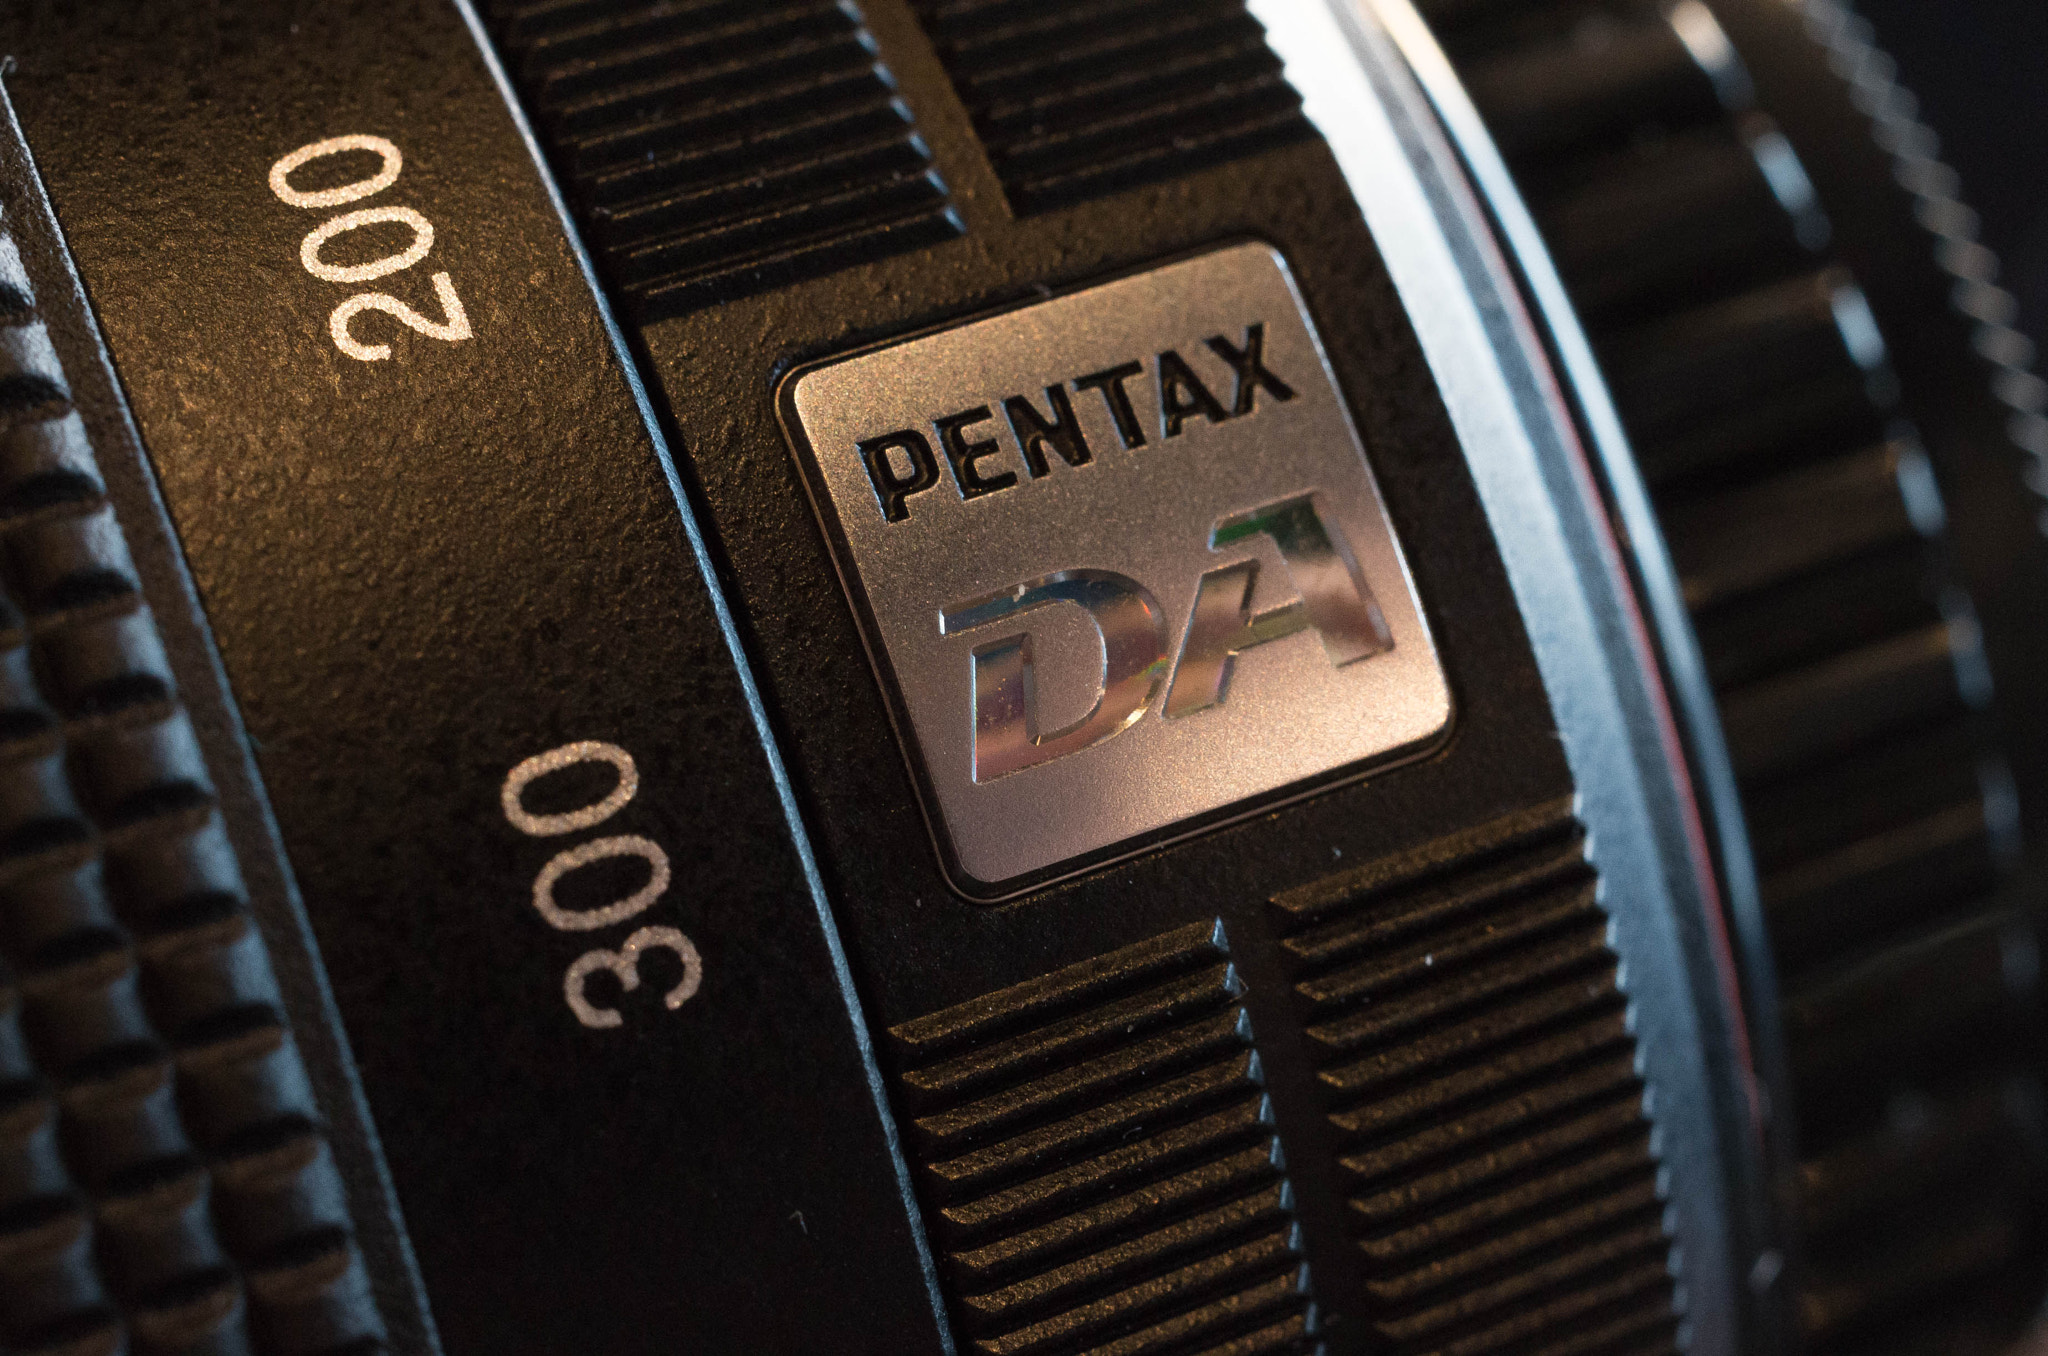 Pentax K-50 sample photo. Hd da 55-300 photography